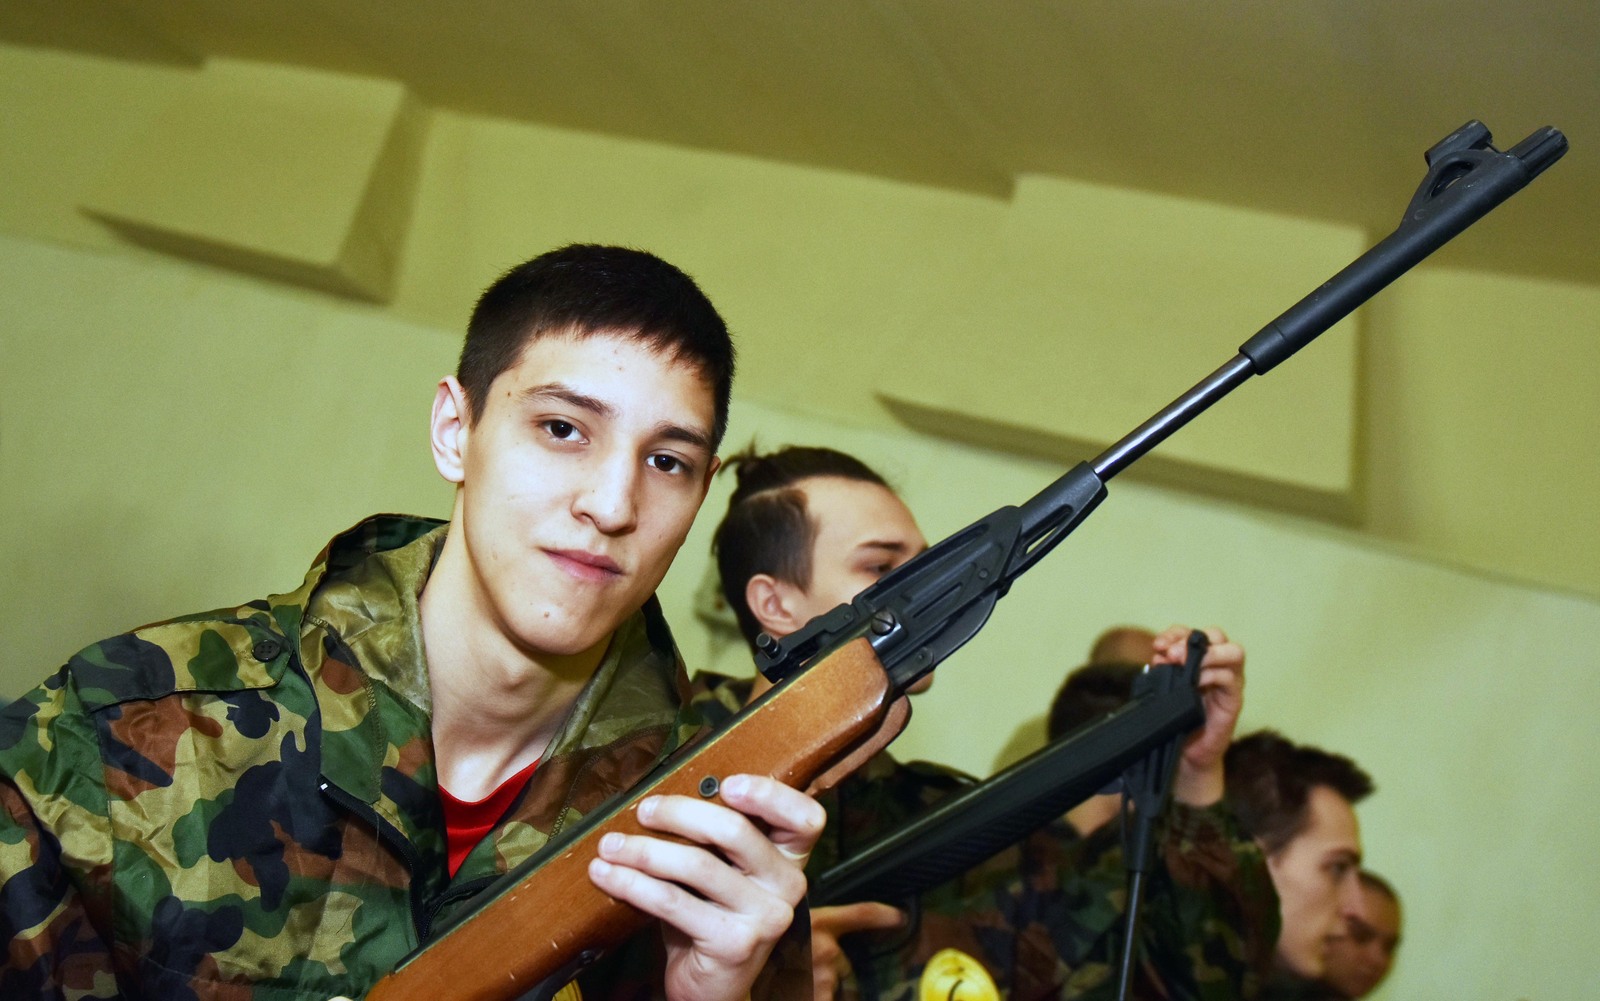 ▲ Назар Аширов: в армию пойдёт без колебаний